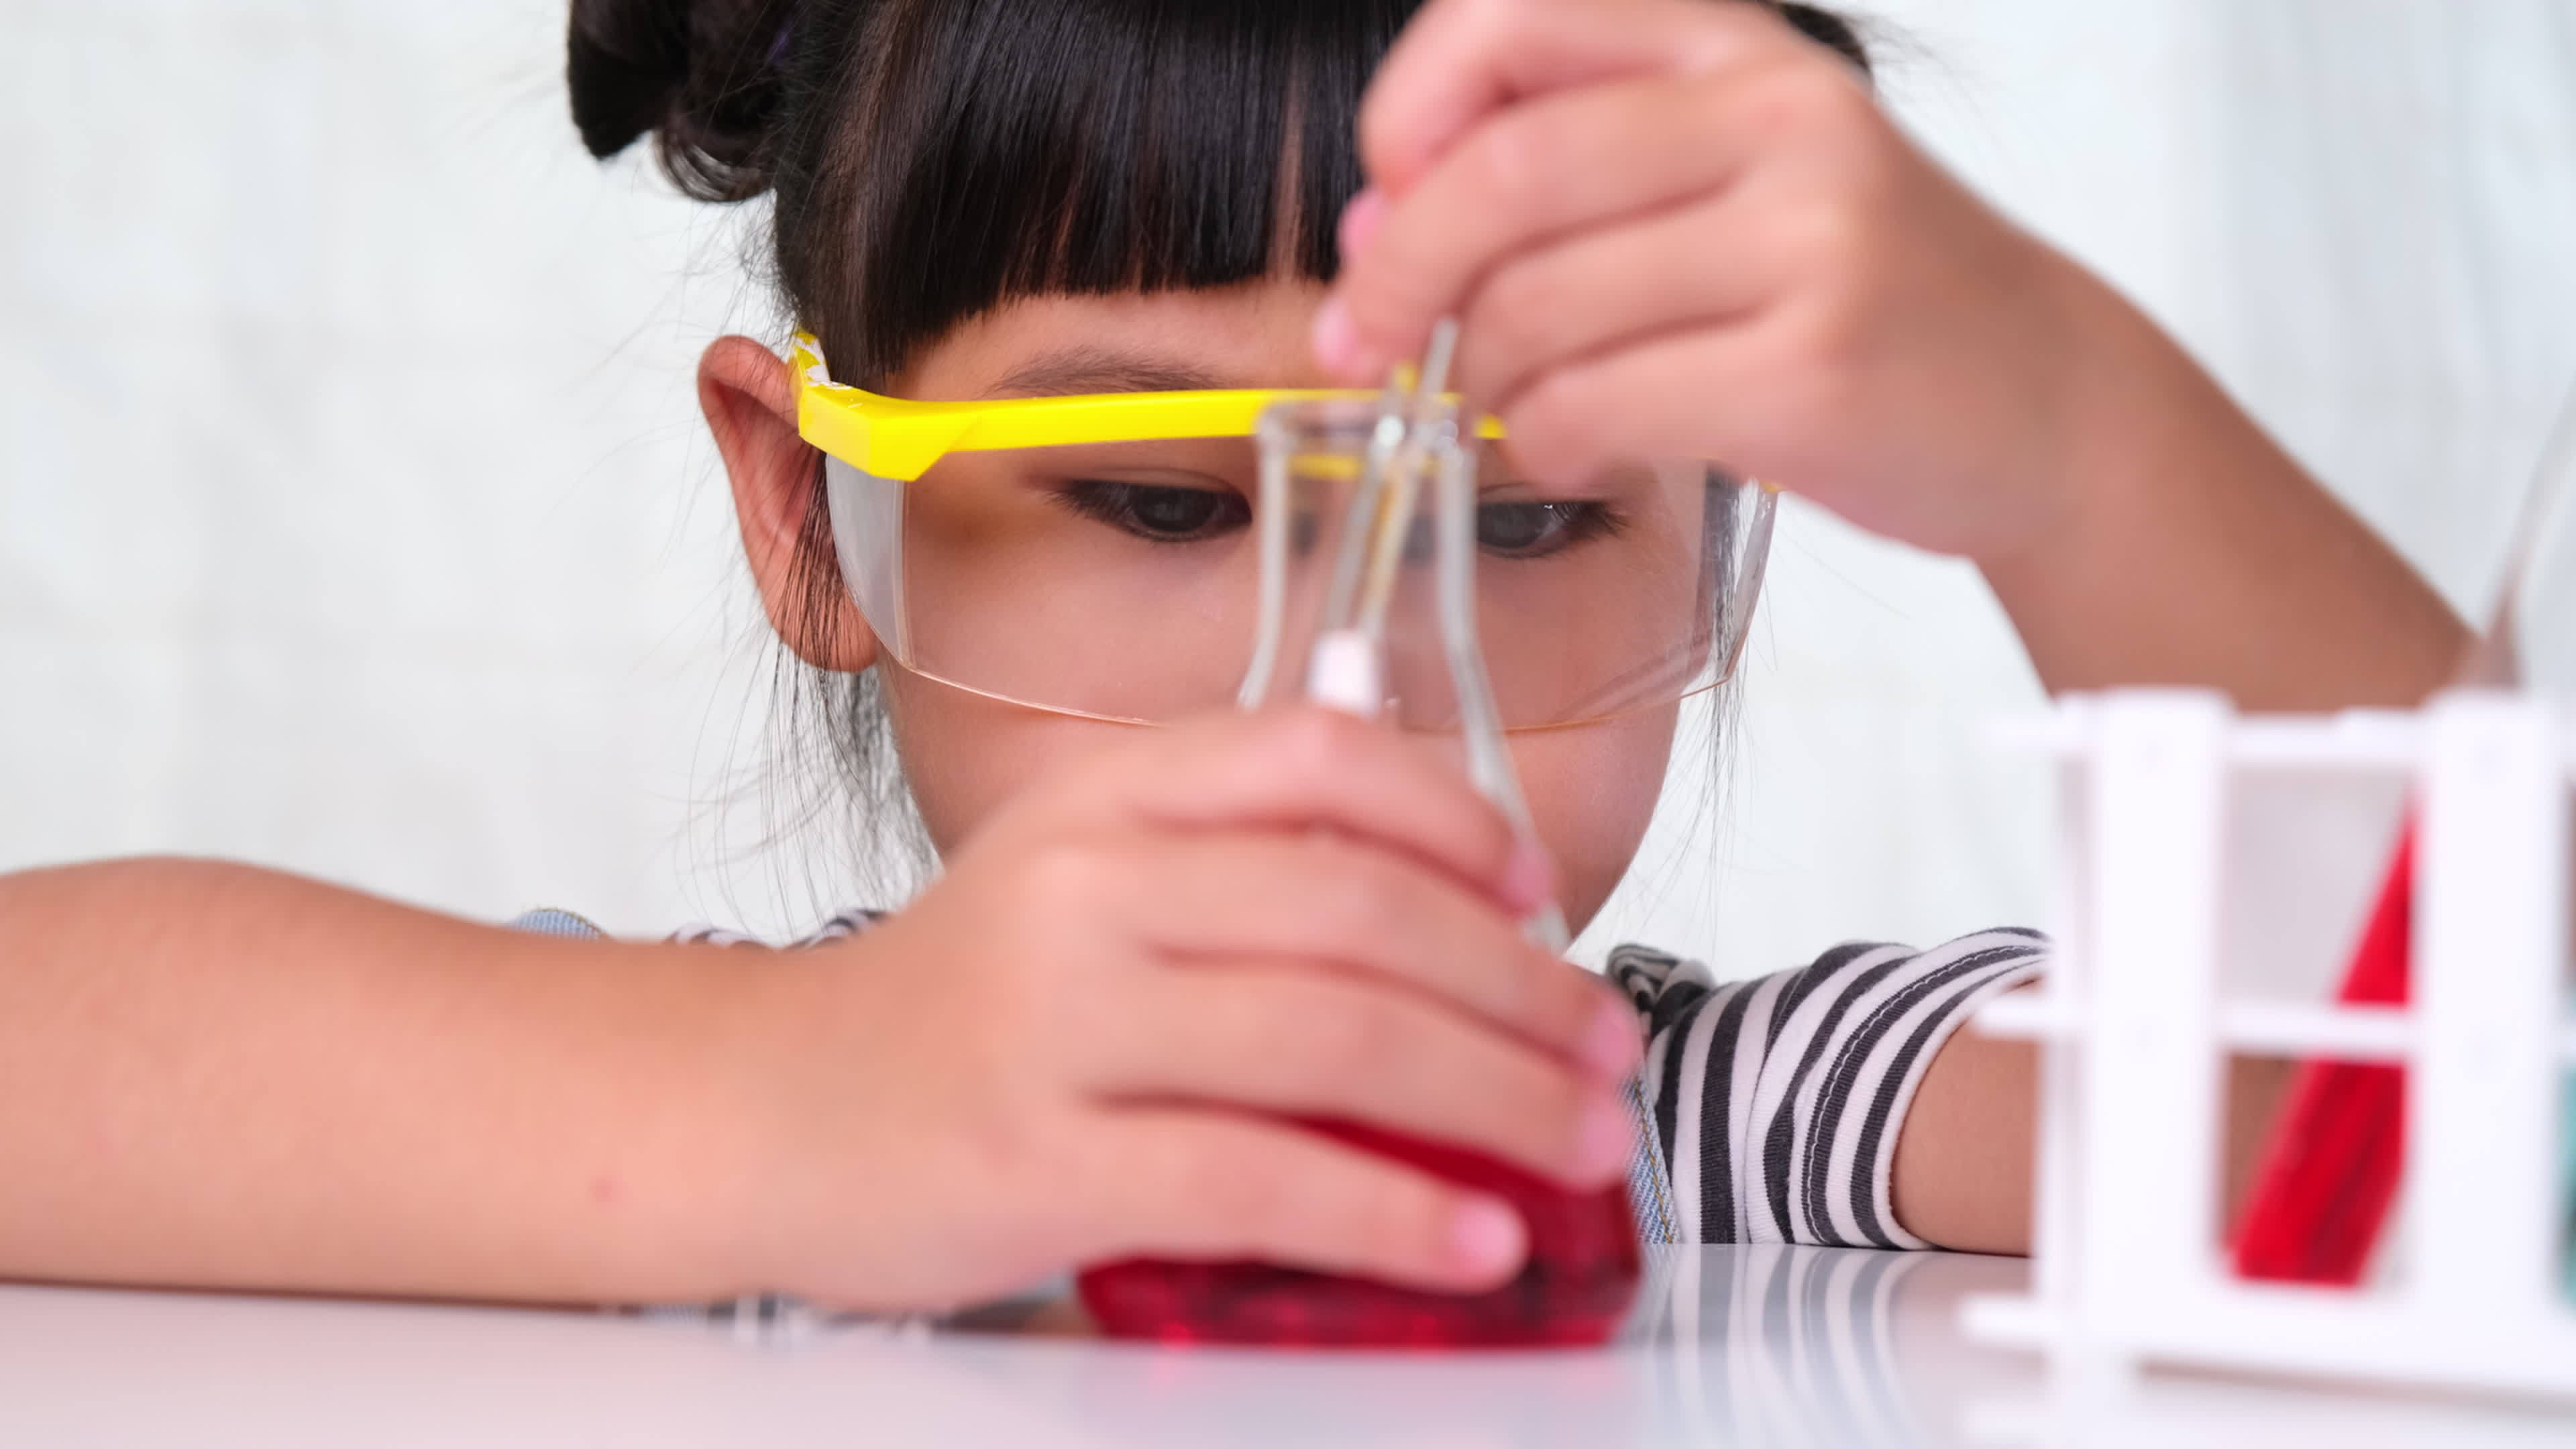 les enfants apprennent et font des expériences scientifiques en classe.  deux petites soeurs jouant à l'expérience scientifique pour l'enseignement  à domicile. des expériences scientifiques faciles et amusantes pour les  enfants à la